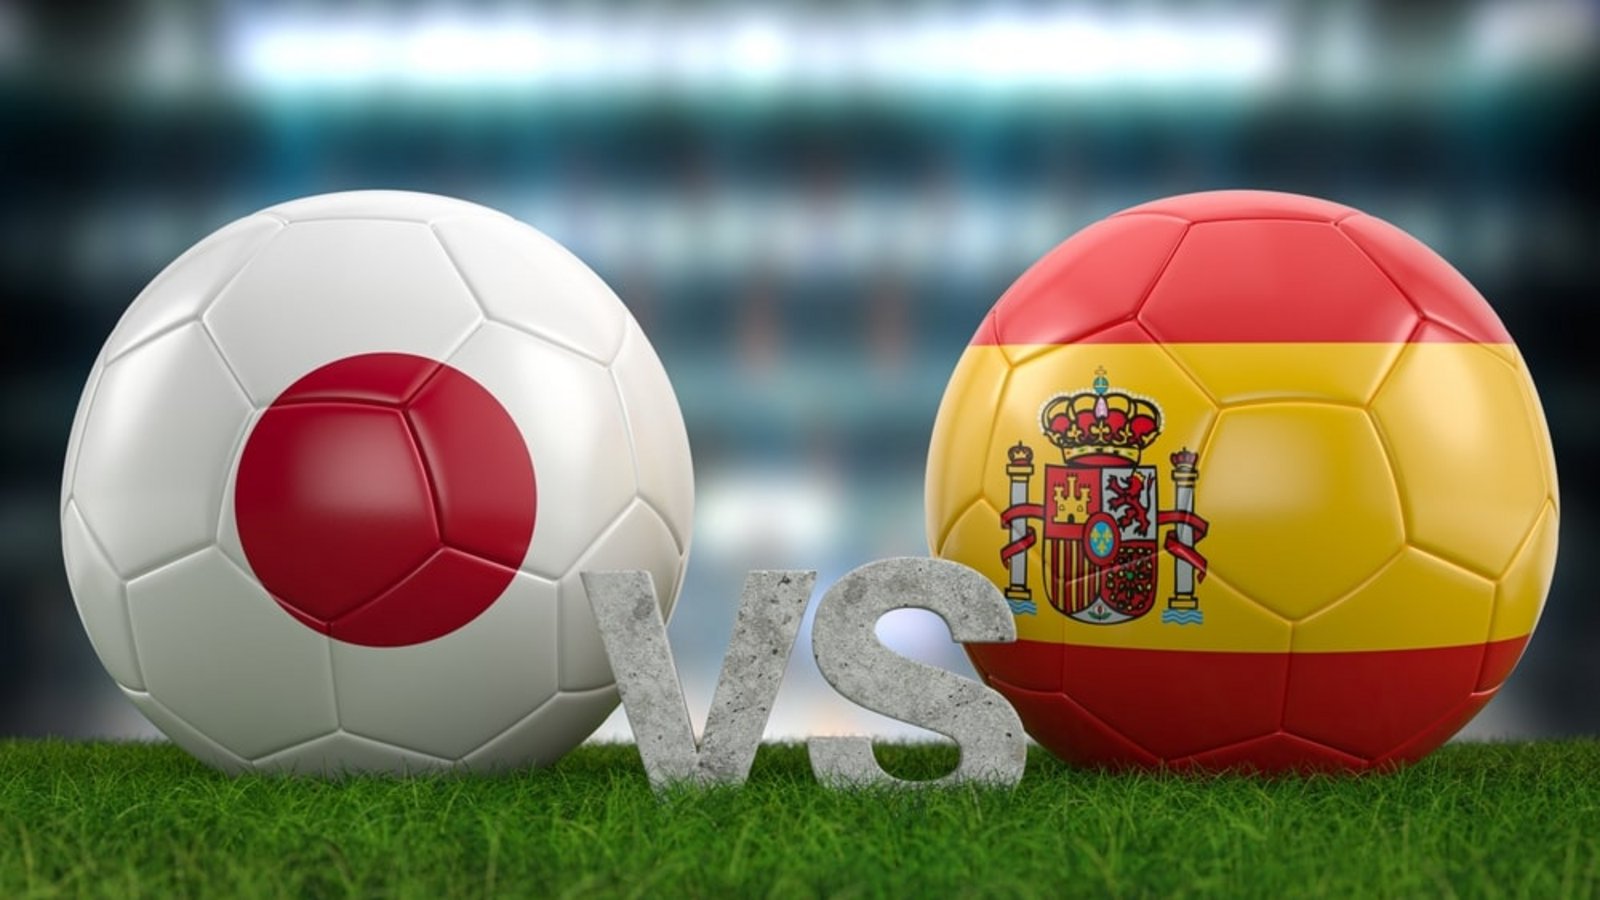 Am Donnerstag spielt Japan gegen Spanien (Gruppe E).Foto: shutterstock.com / UniversalStudio